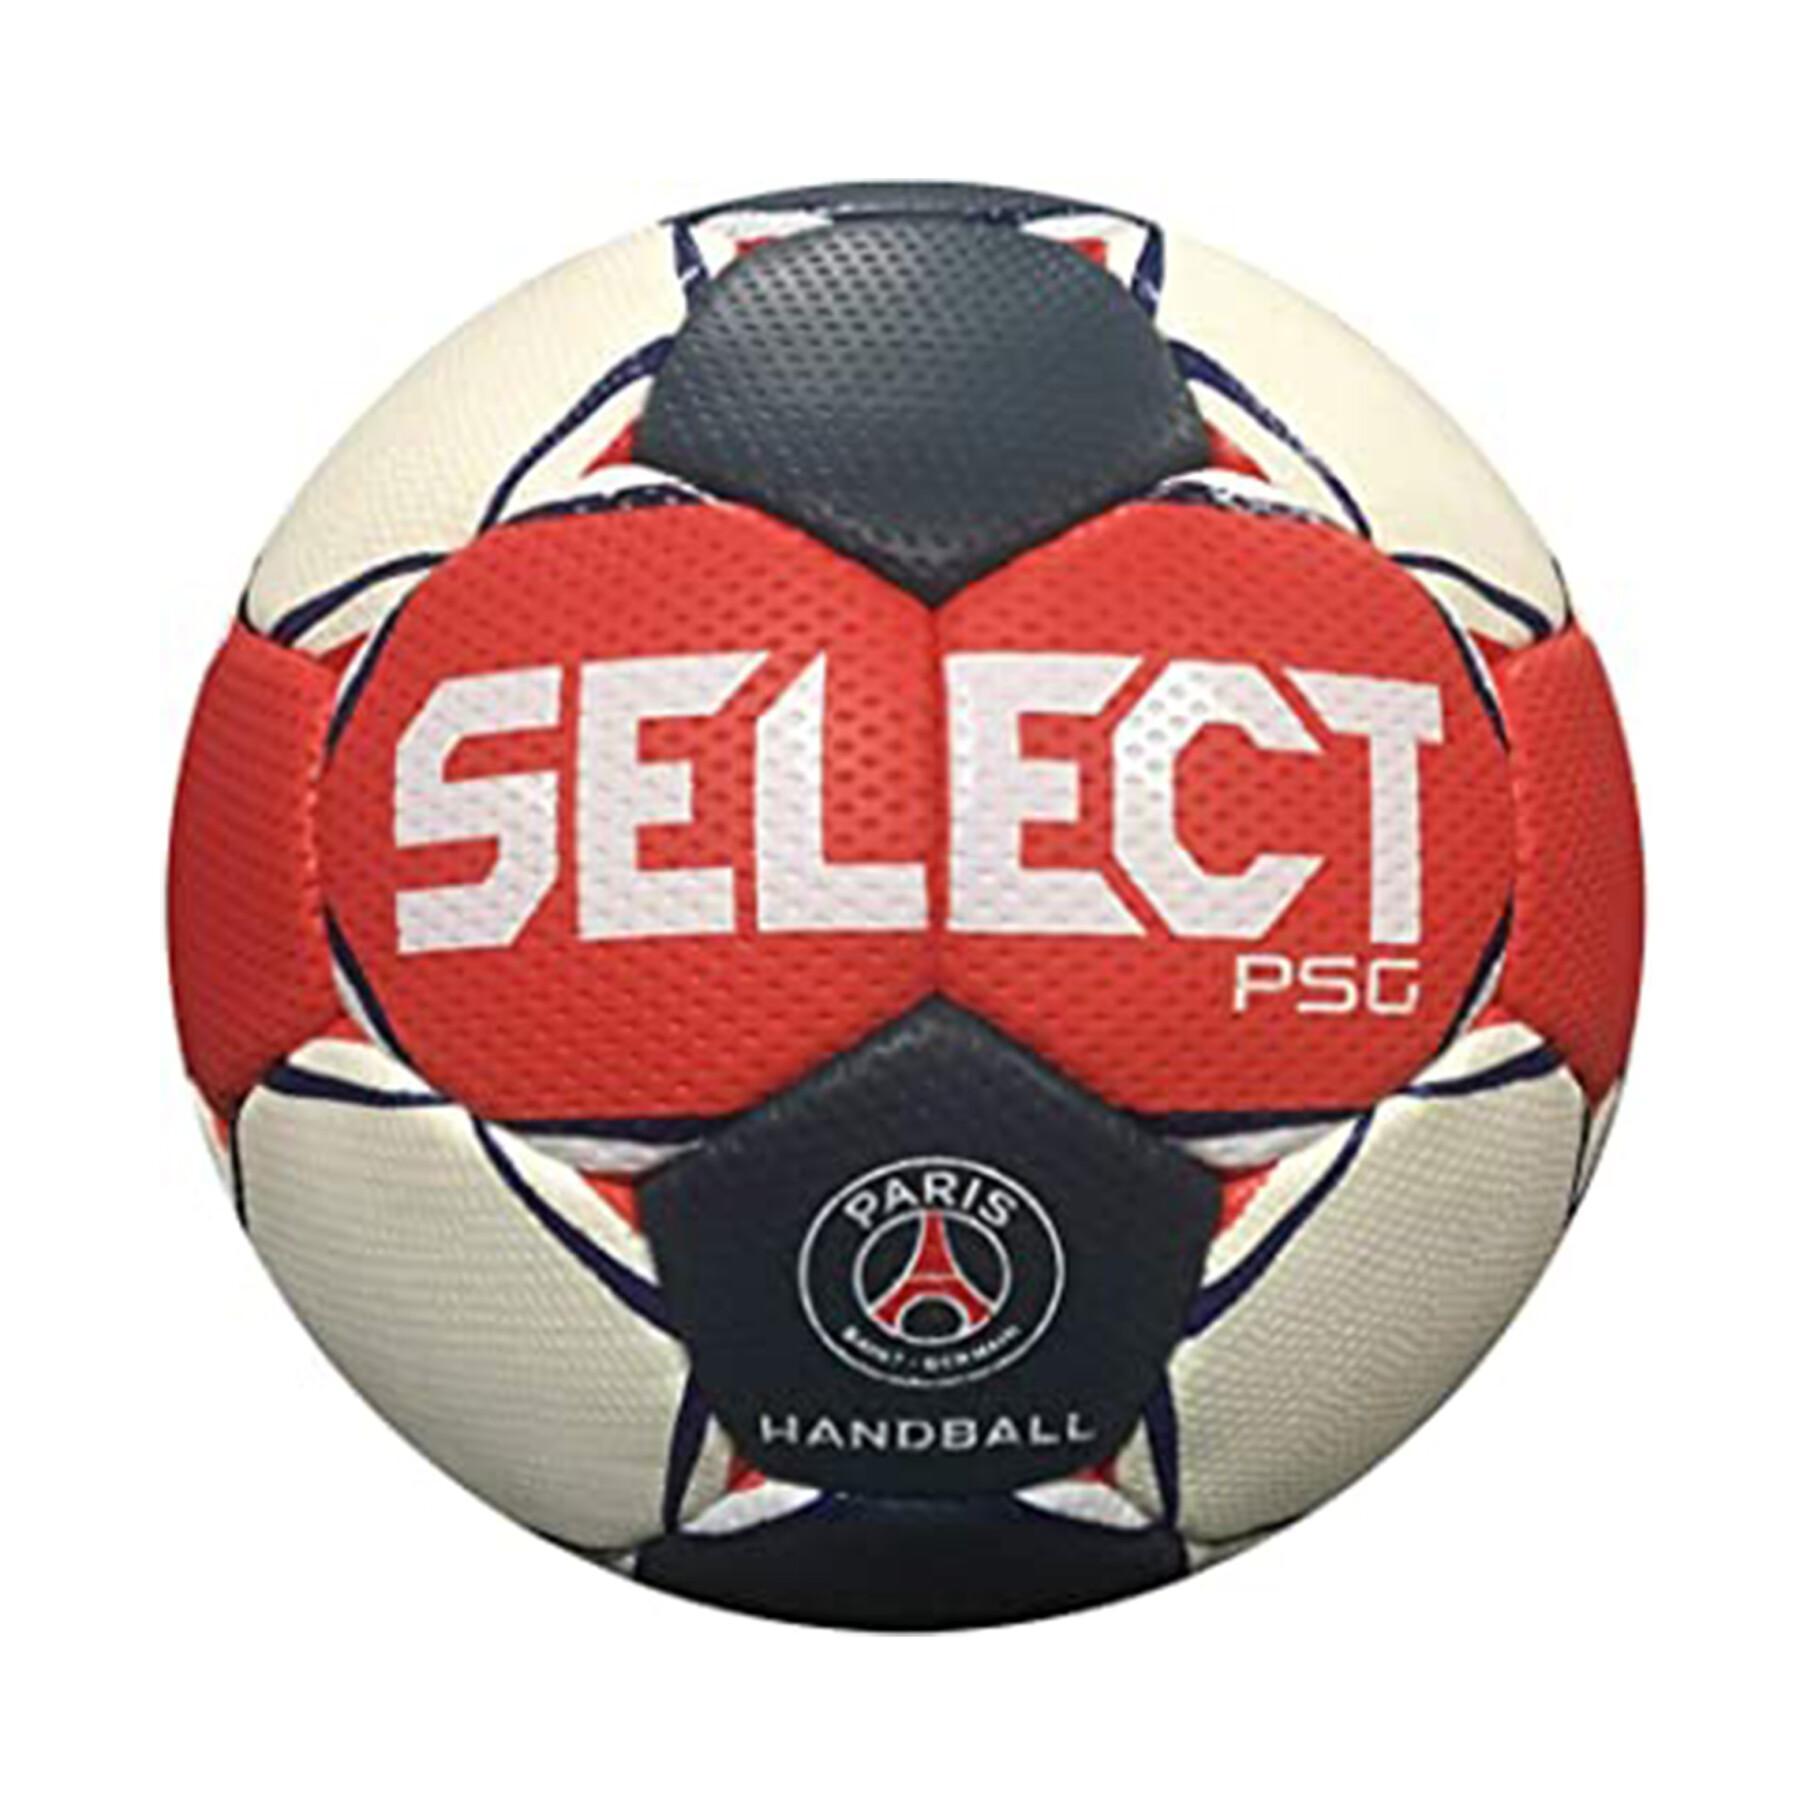 Handball Select MB PSG 2020/21